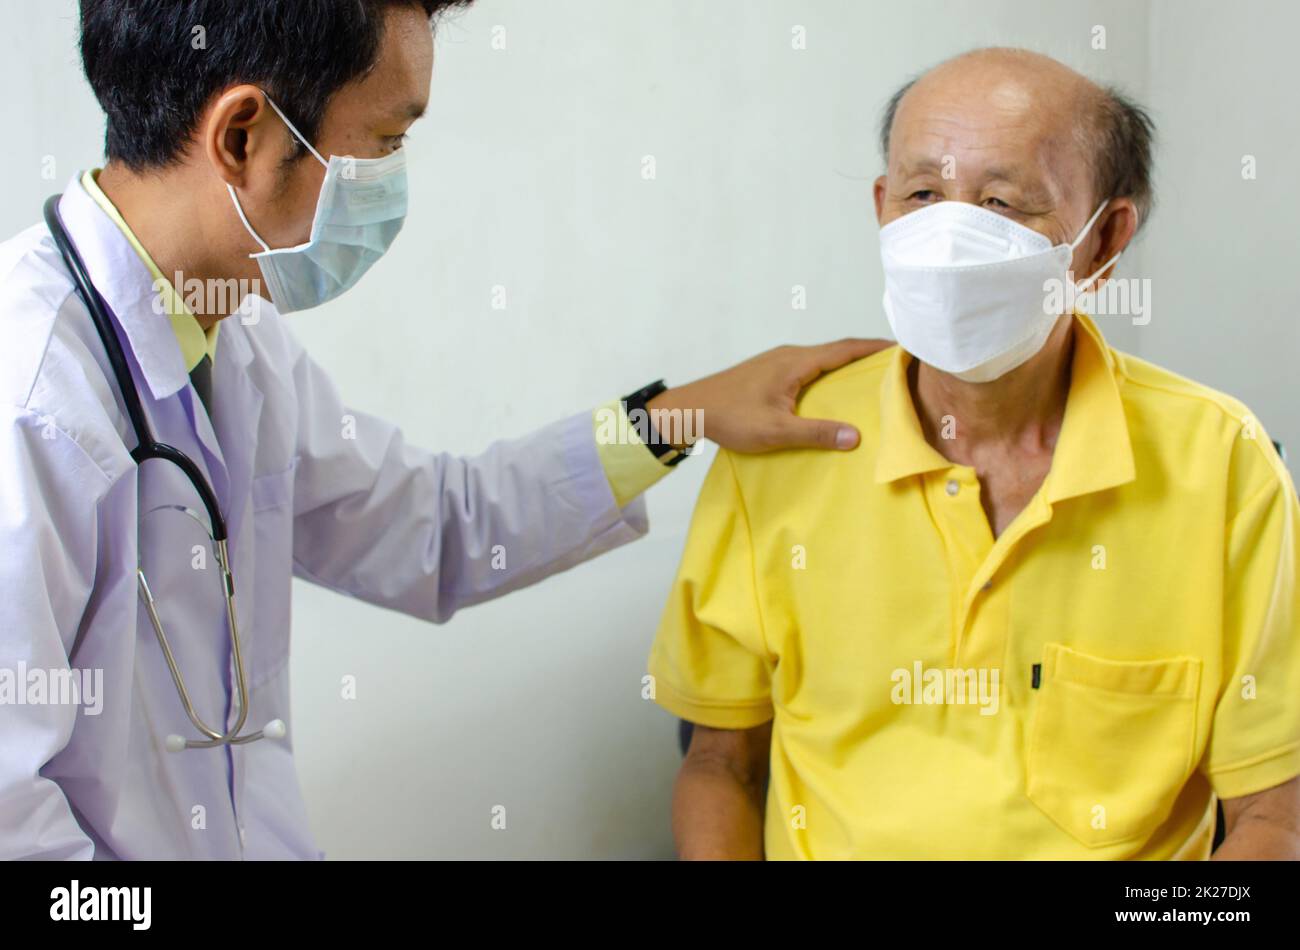 el doctor sujetó su hombro y habló con un hombre mayor que estaba enfermo para darle aliento. Foto de stock